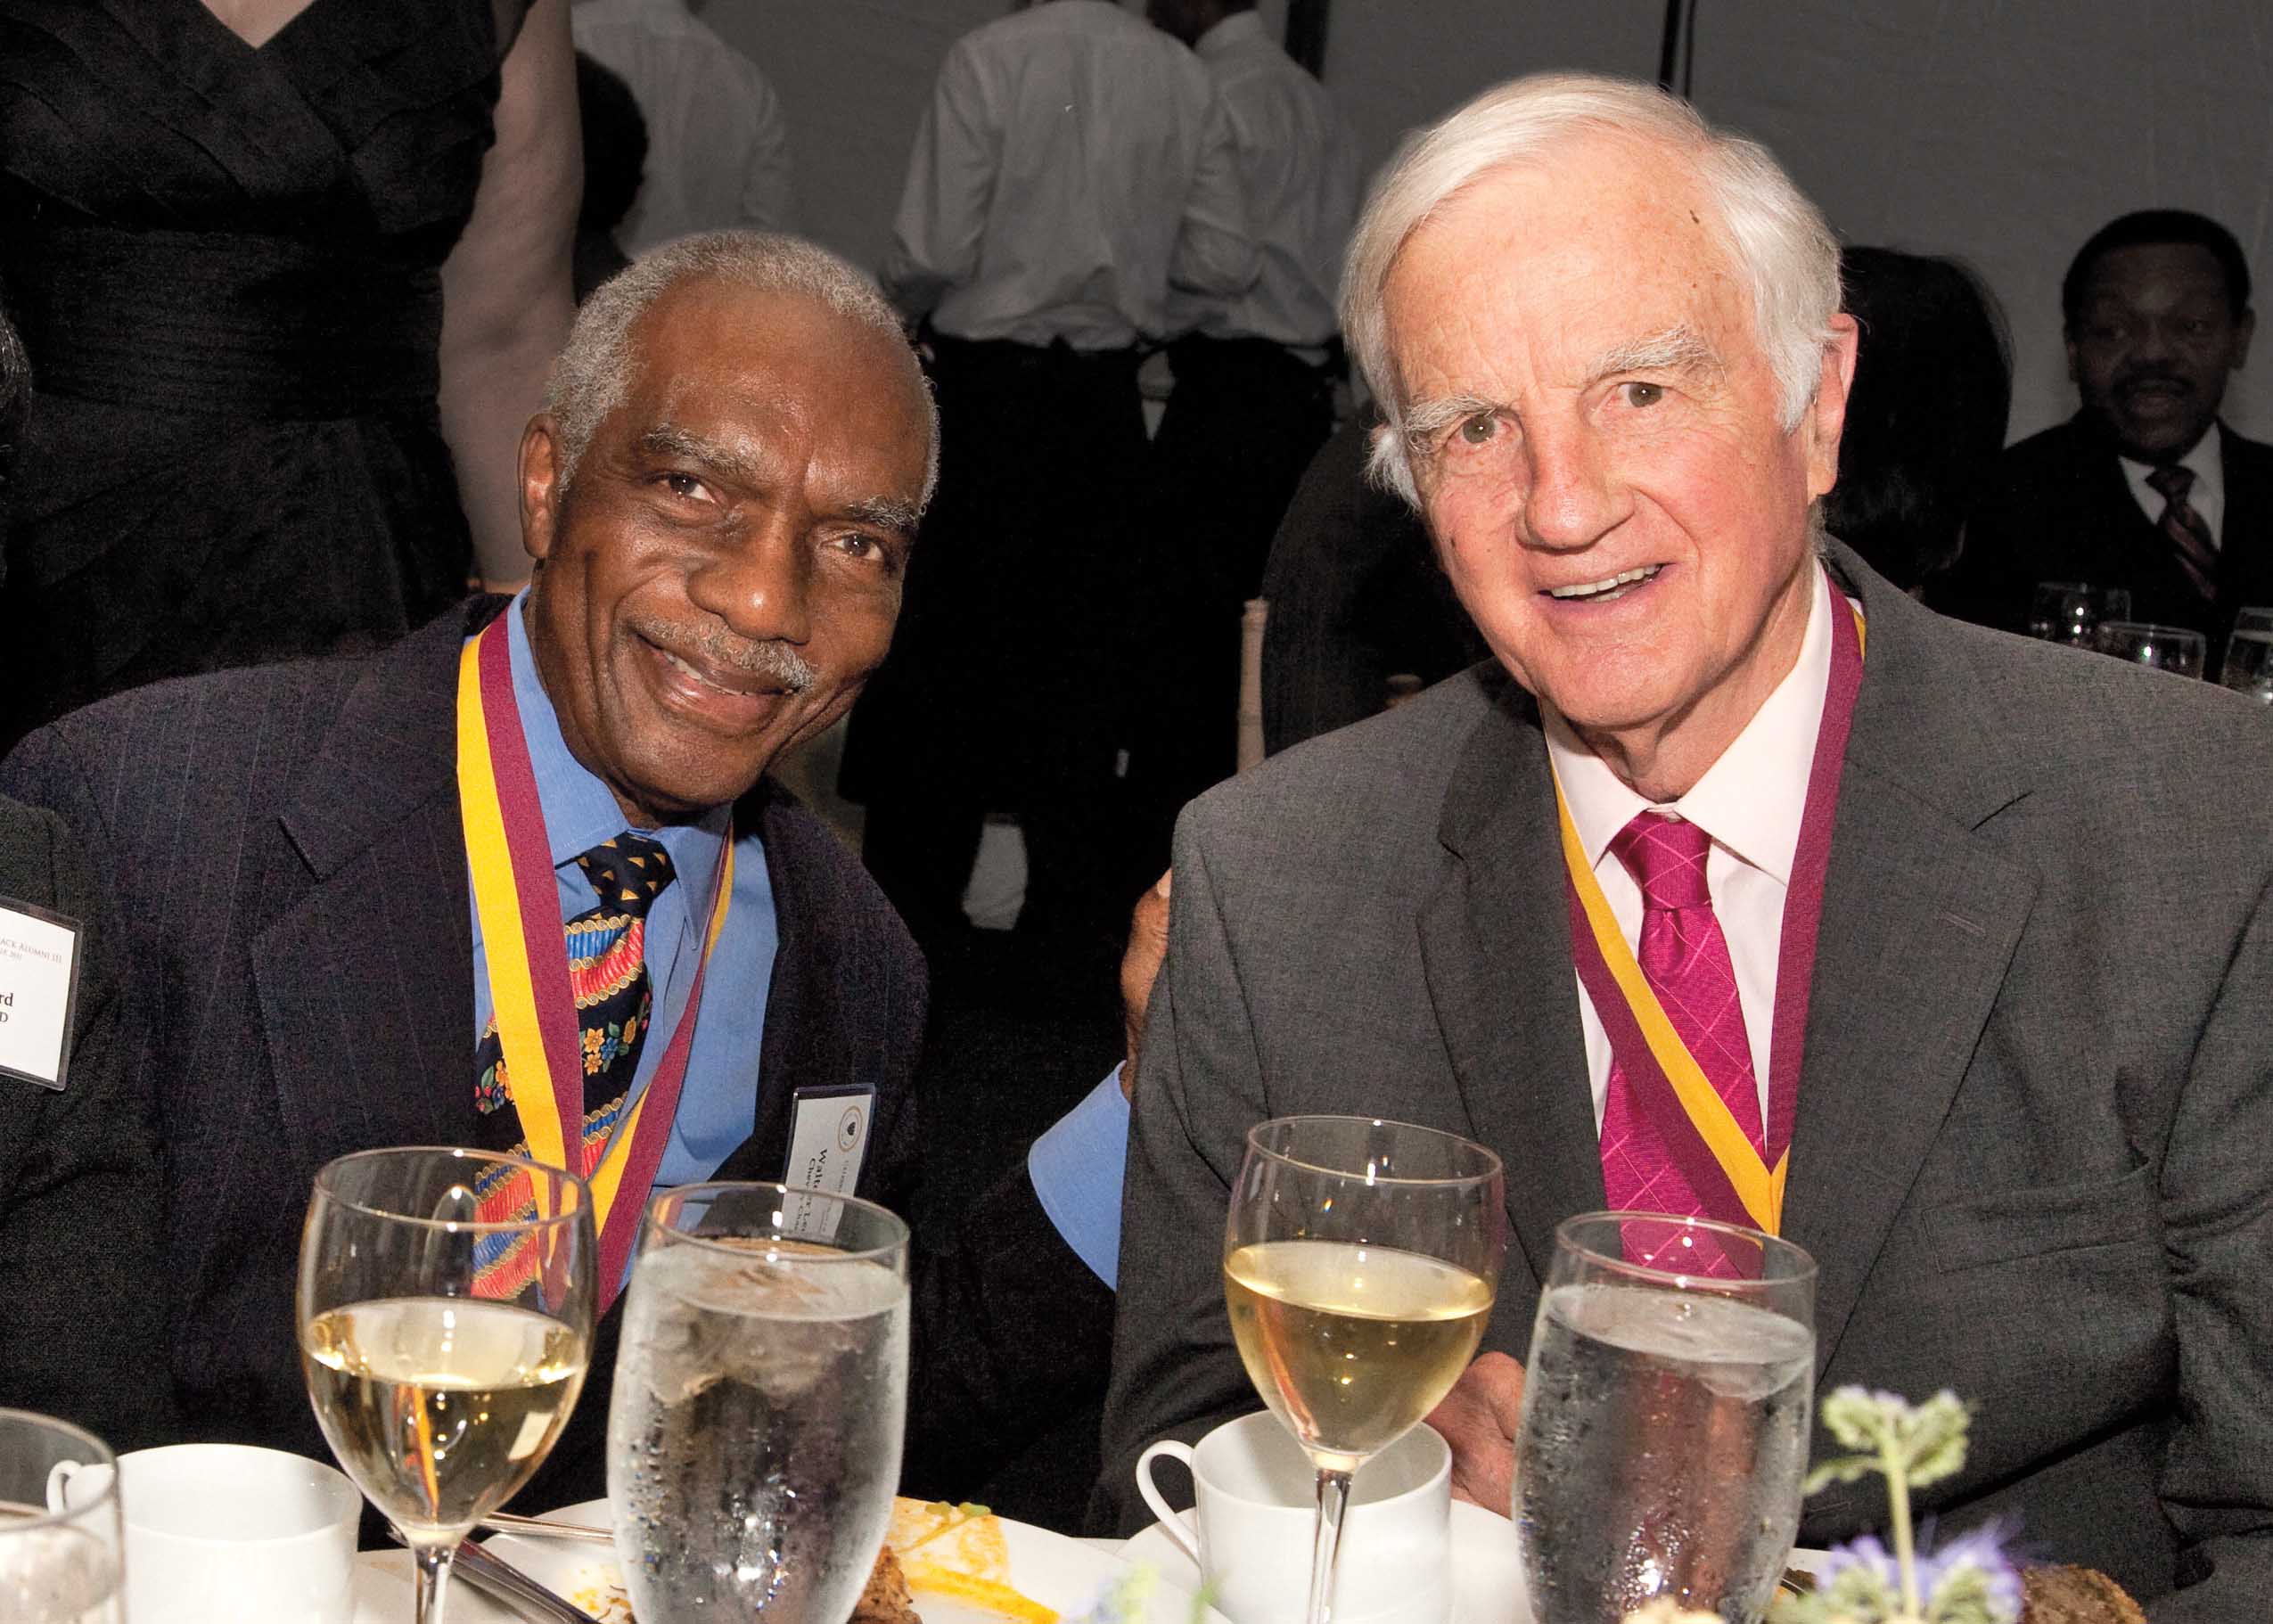 Walter J. Leonard and Derek C. Bok sitting together at a dinner table